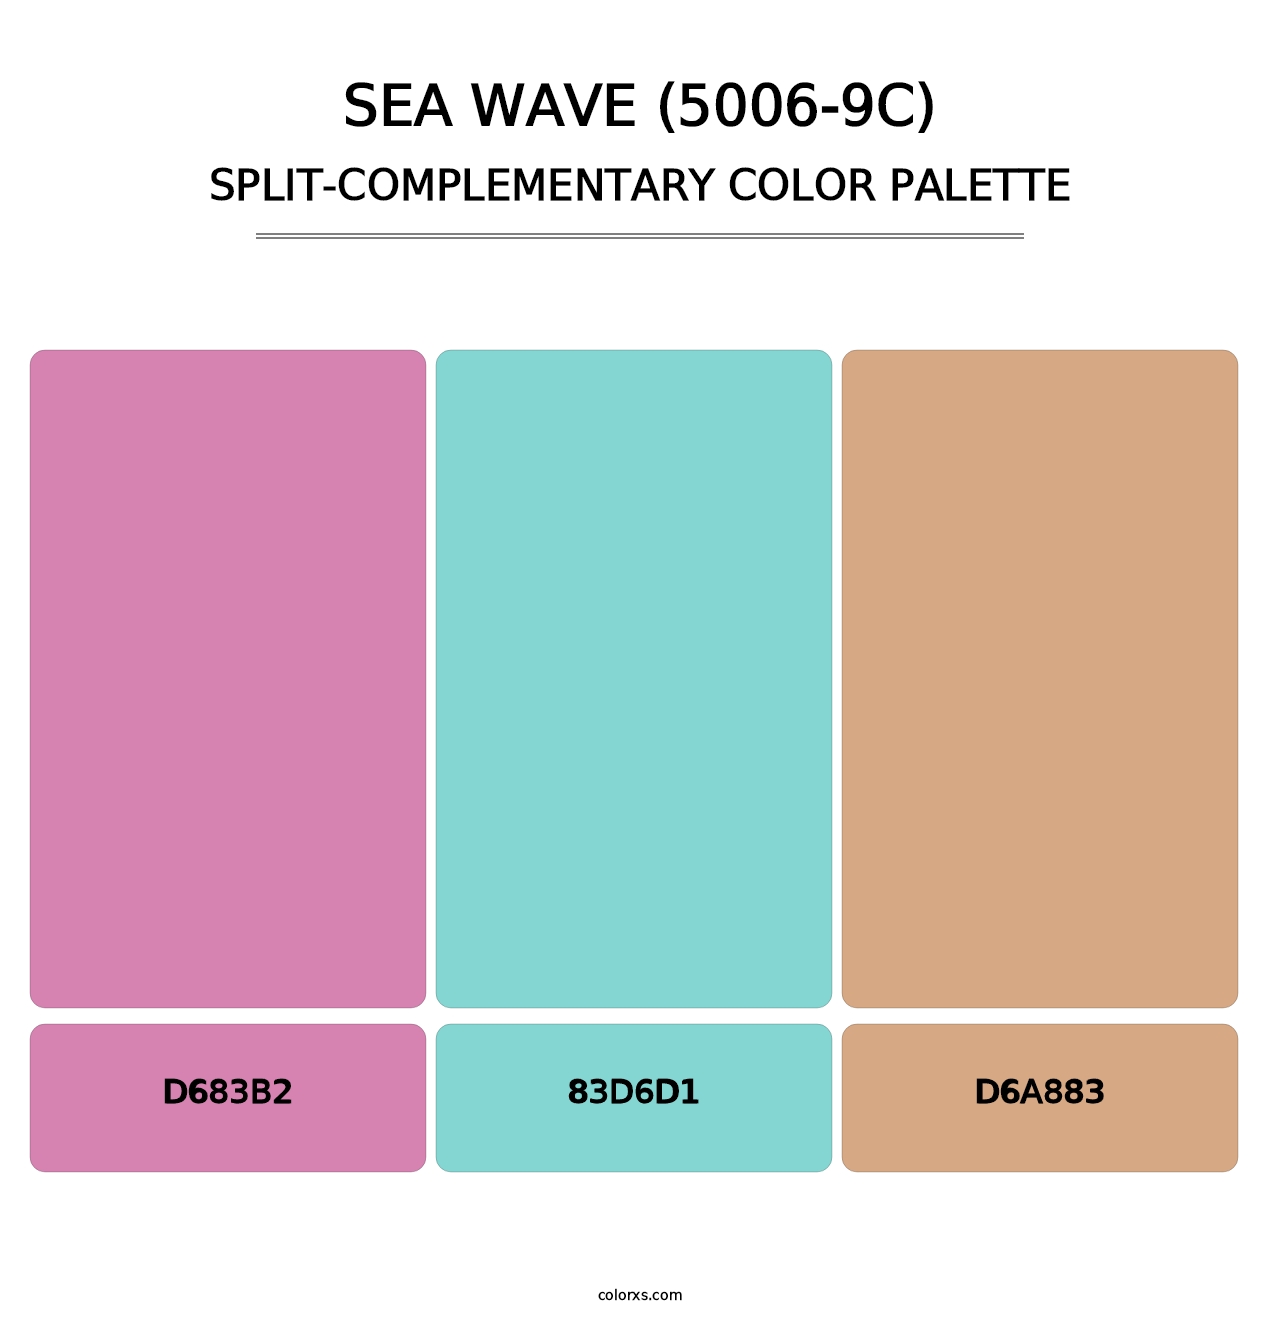 Sea Wave (5006-9C) - Split-Complementary Color Palette